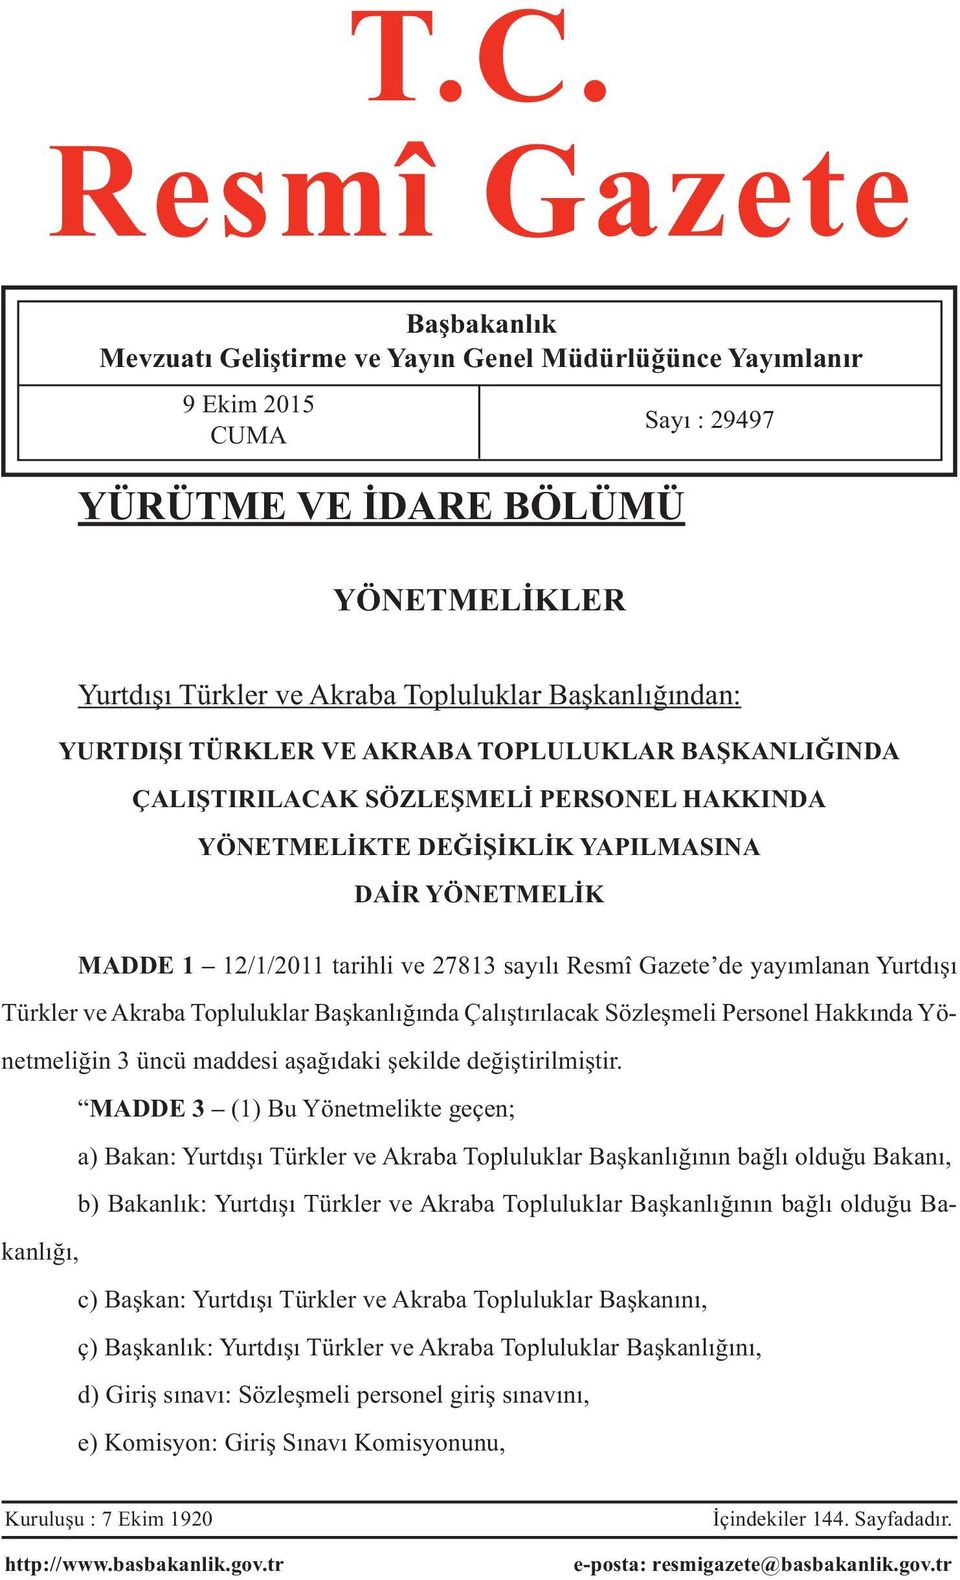 sayılı Resmî Gazete de yayımlanan Yurtdışı Türkler ve Akraba Topluluklar Başkanlığında Çalıştırılacak Sözleşmeli Personel Hakkında Yönetmeliğin 3 üncü maddesi aşağıdaki şekilde değiştirilmiştir.